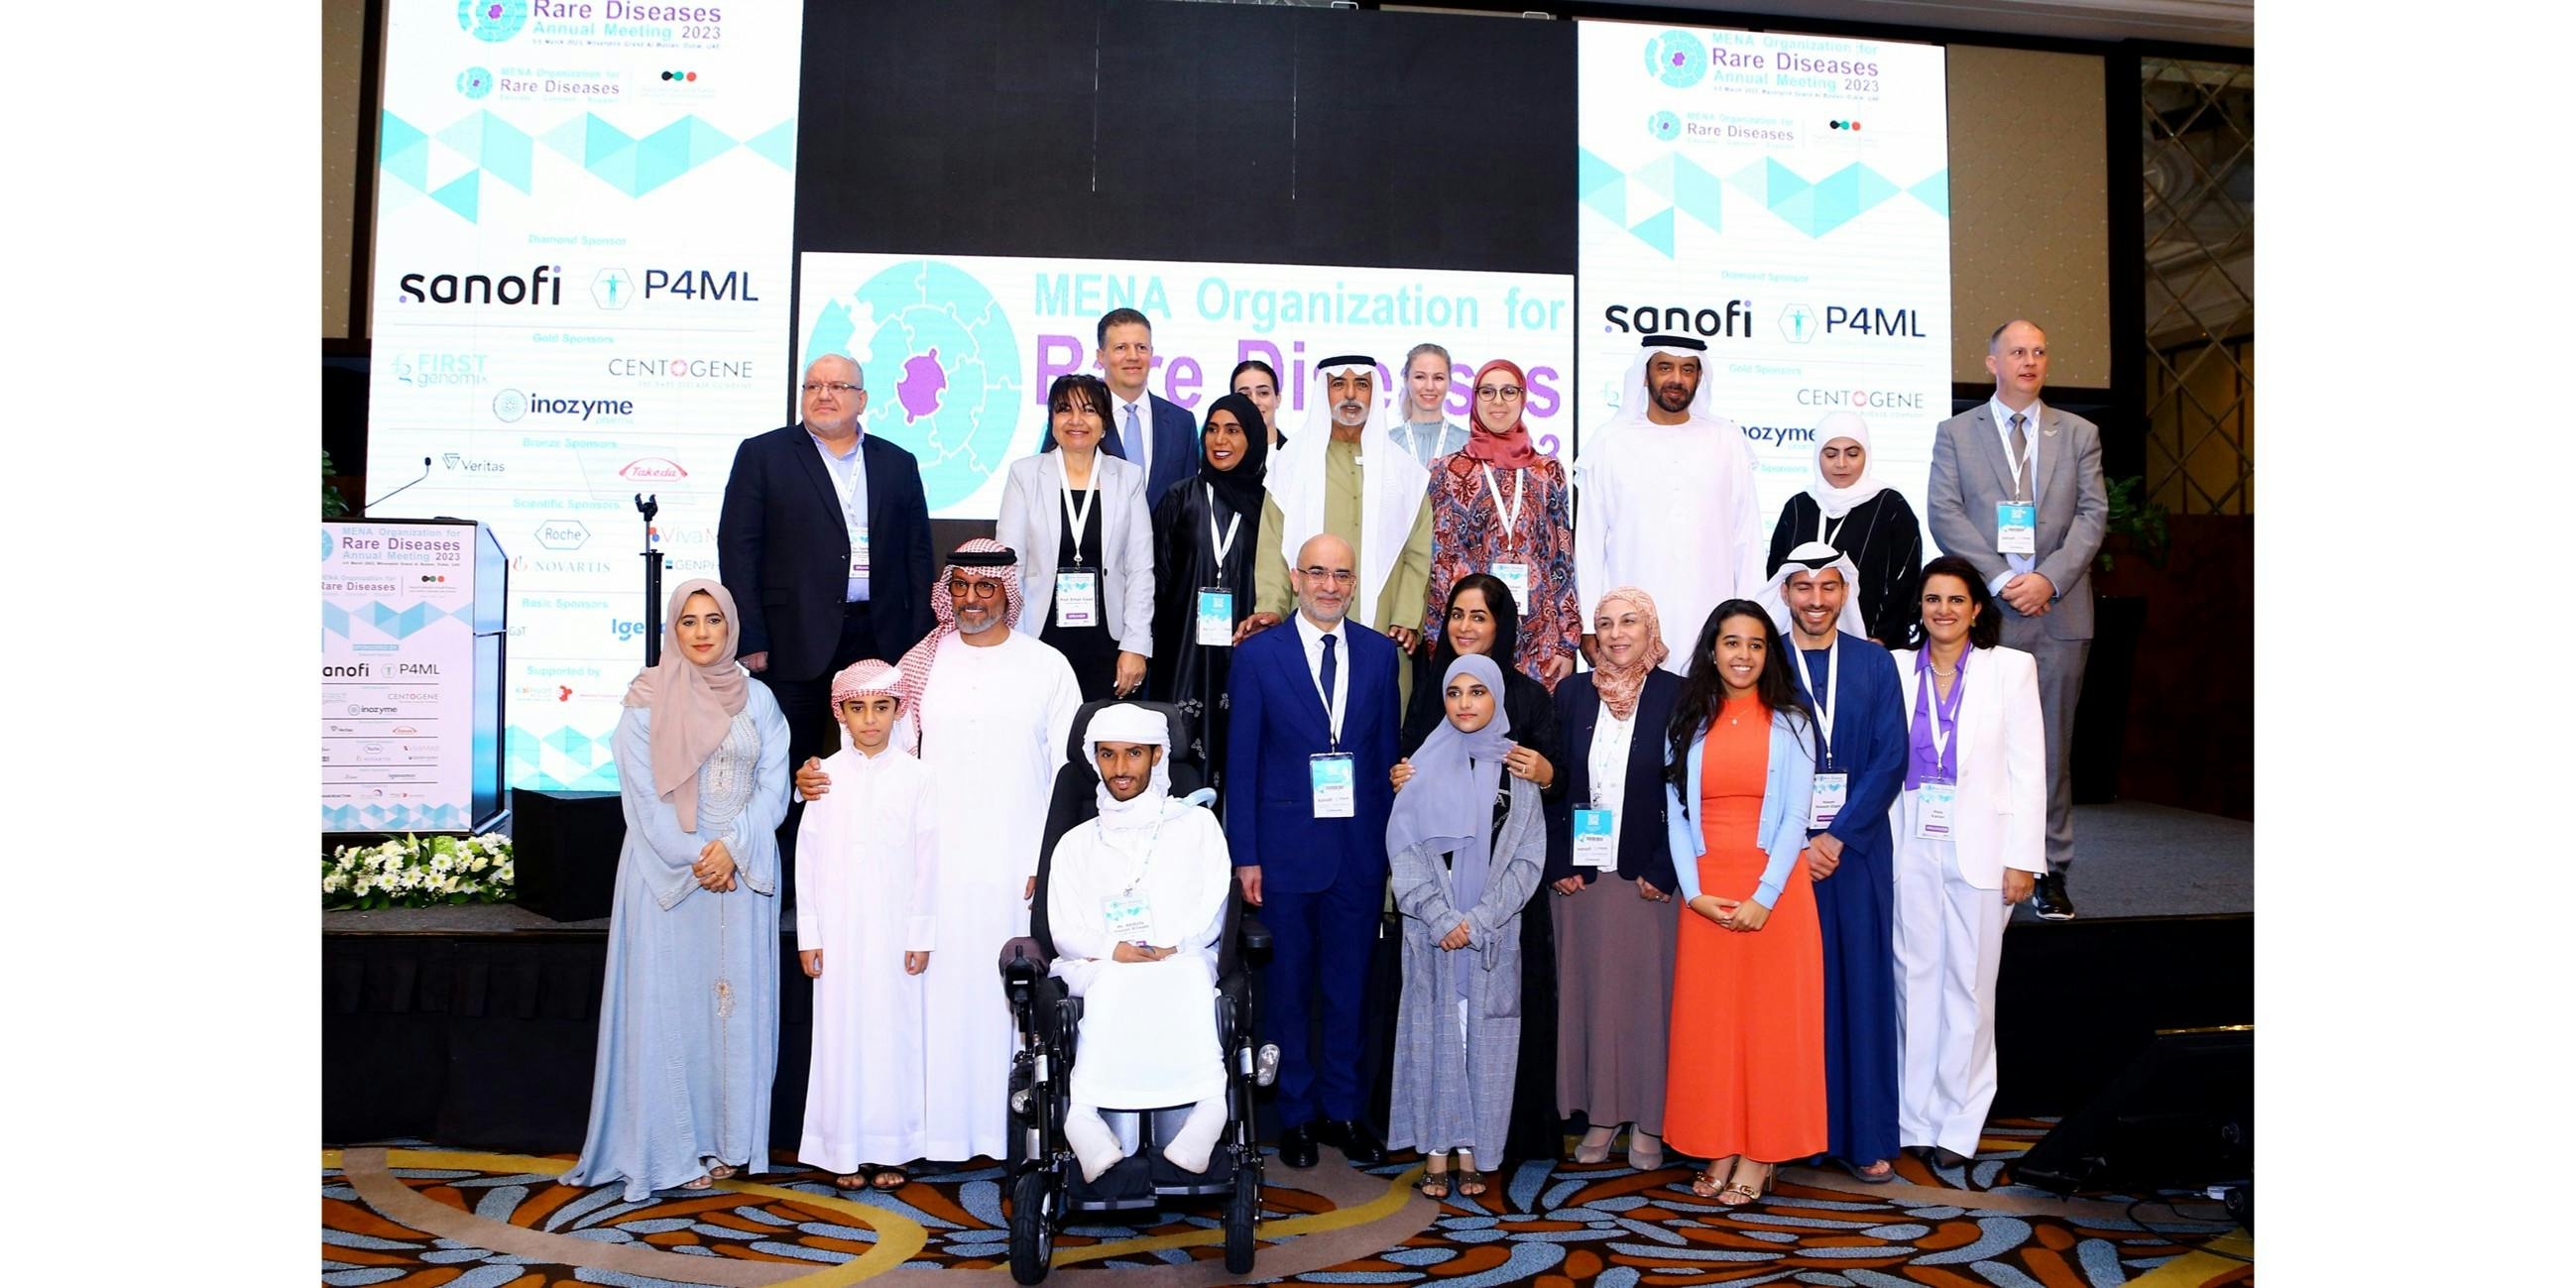 نهيان بن مبارك يفتتح مؤتمر جمعية الأمراض النادرة في الشرق الأوسط وشمال افريقيا